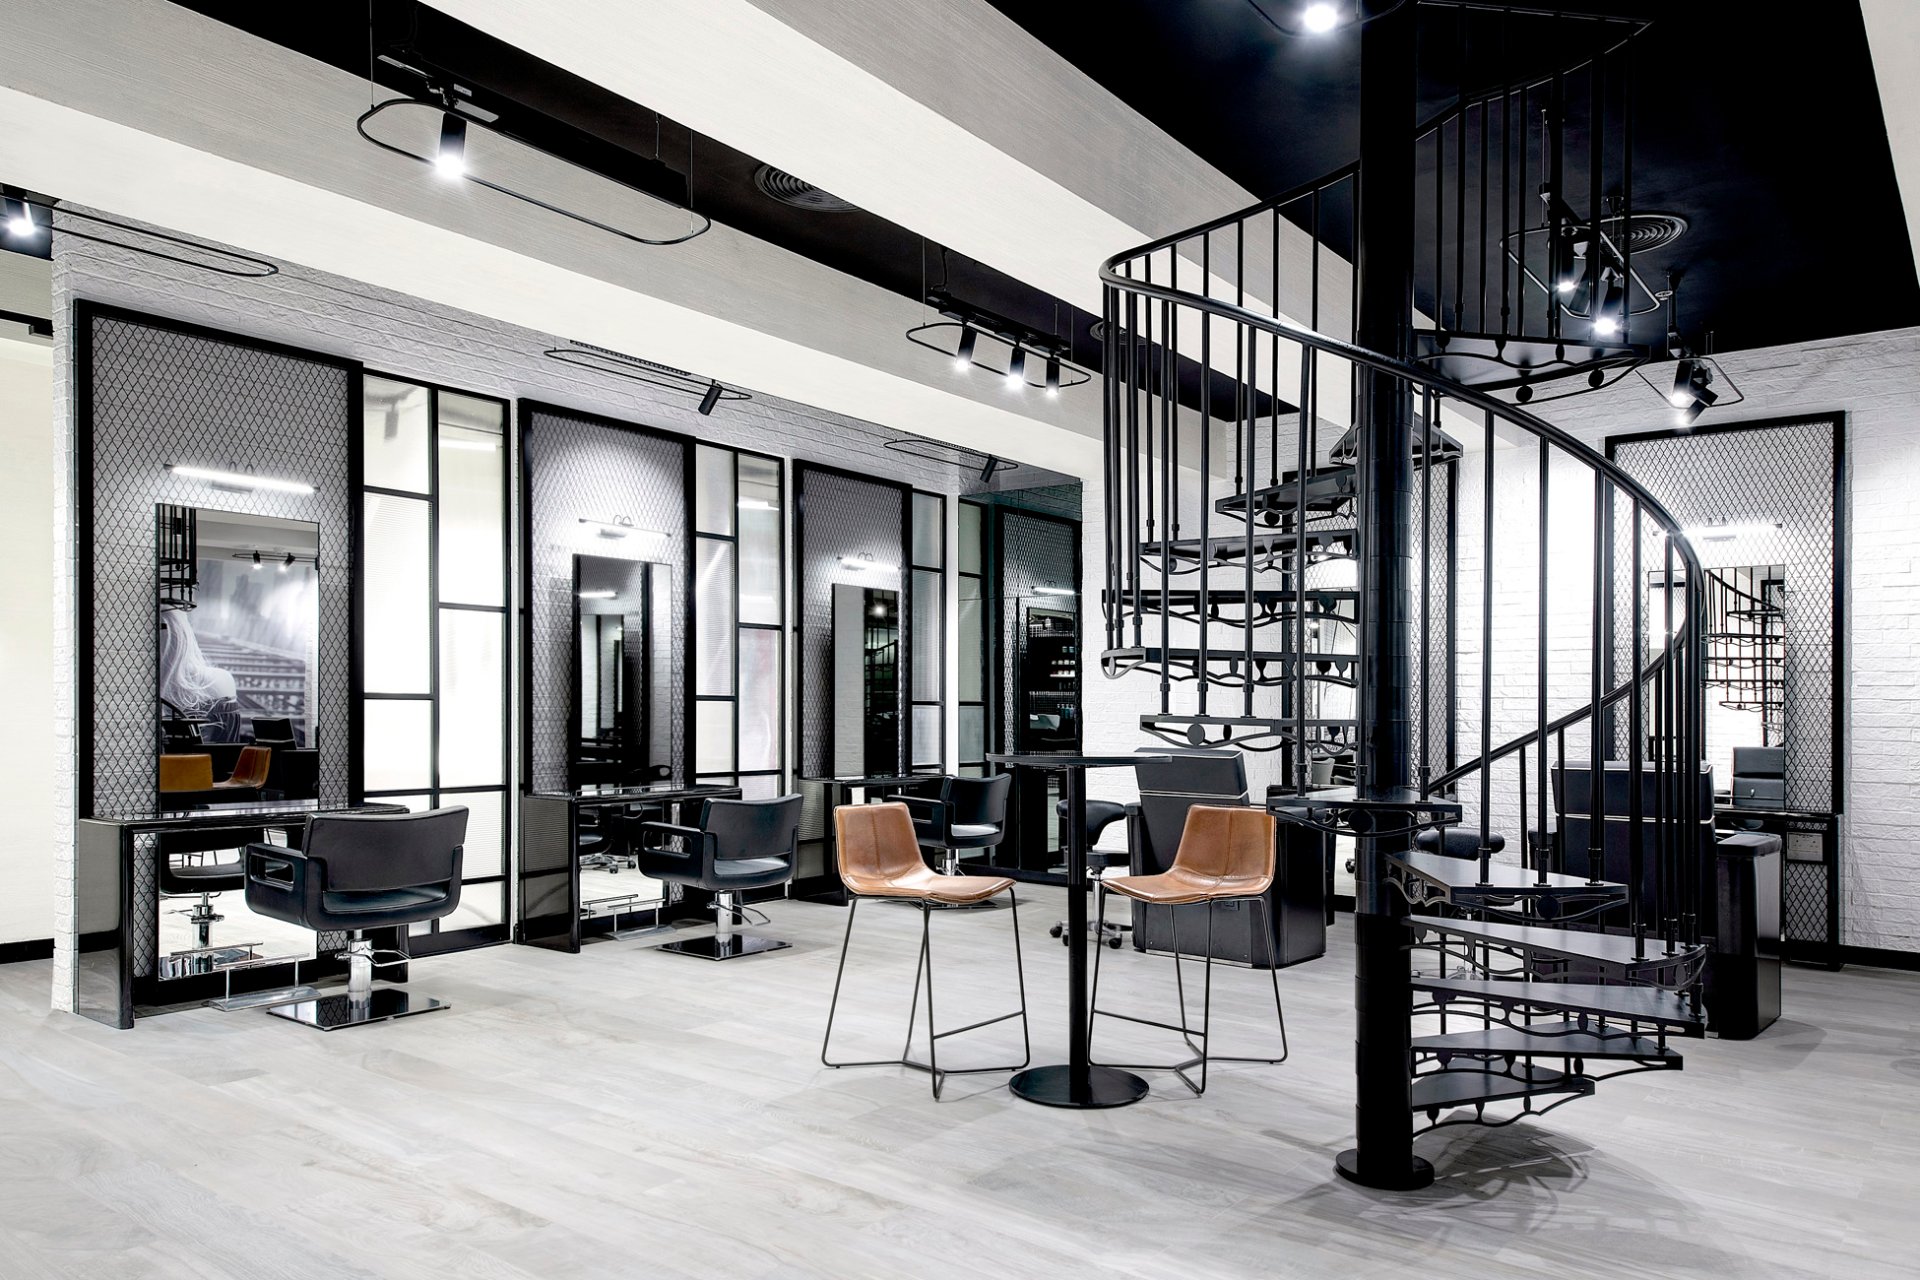 The Loft Fifth Avenue Salon, Dubai - Salon Interior Design on Love That  Design